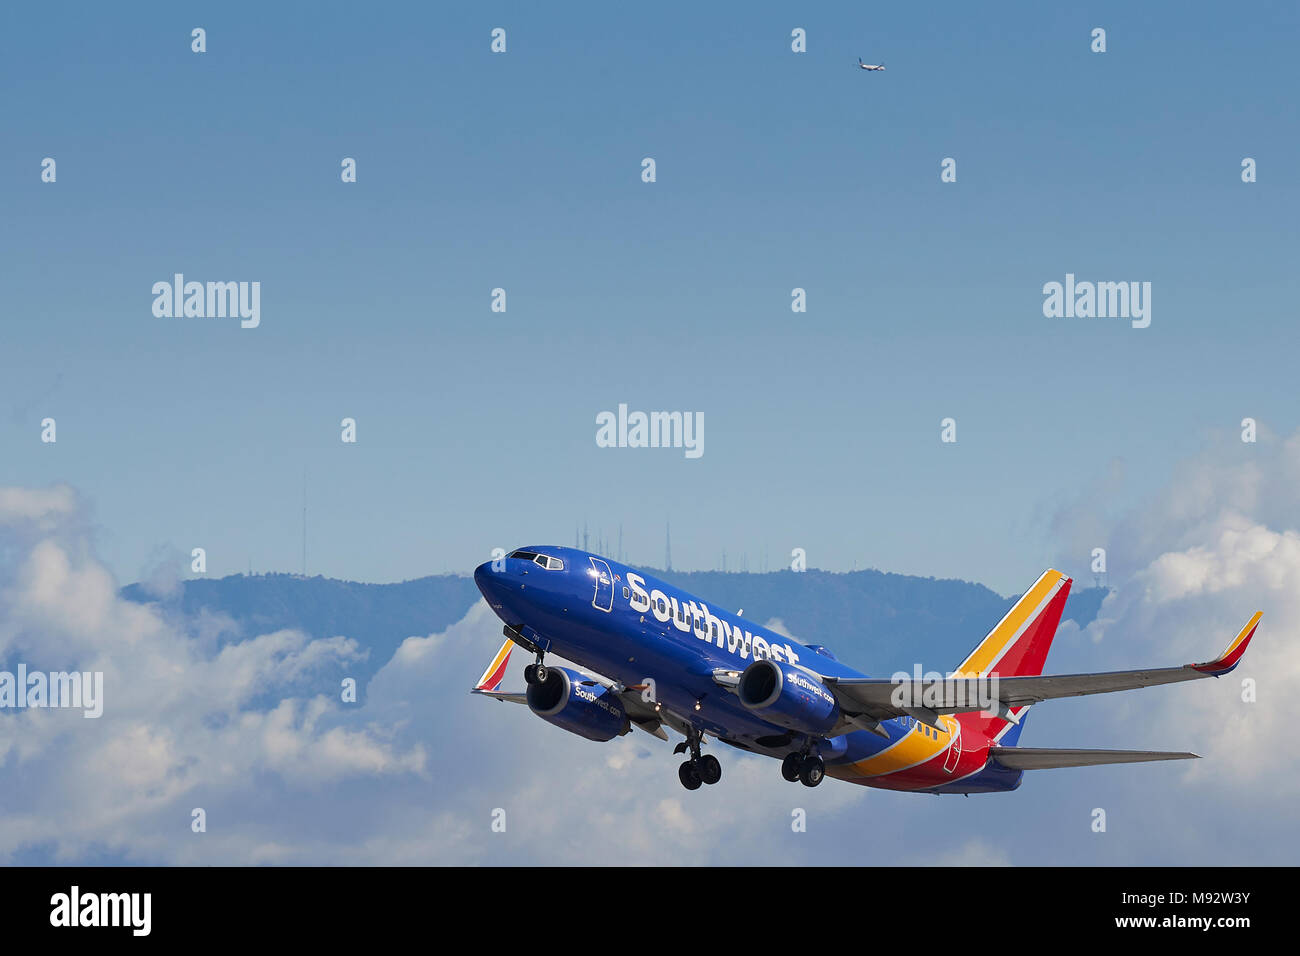 Southwest Airlines Boeing 737 Airliner vom Internationalen Flughafen Los Angeles, LAX, Wolken und Schnee bedeckten San Gabriel Berge dahinter. Stockfoto